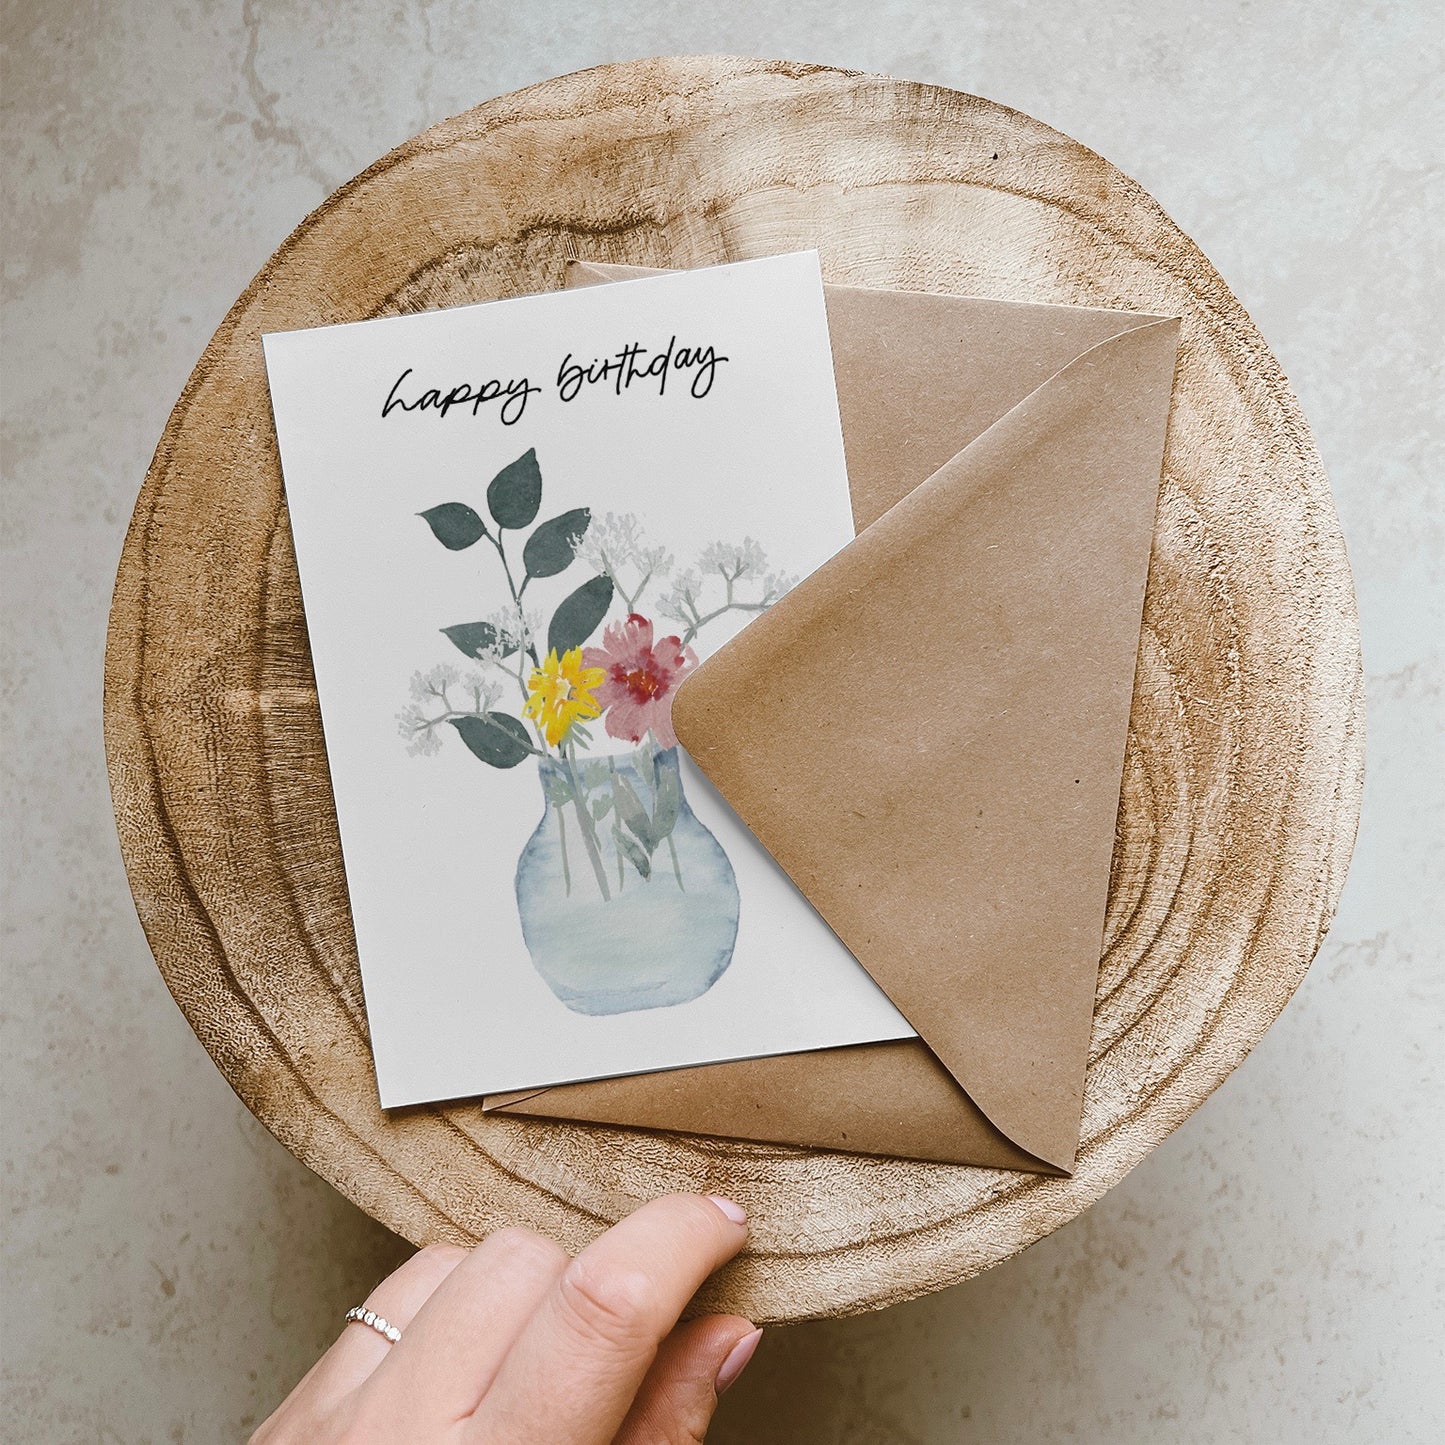 Klappkarte mit buntem Blumenstrauß in durchsichtiger Vase. Lettering: ,,happy birthday''.